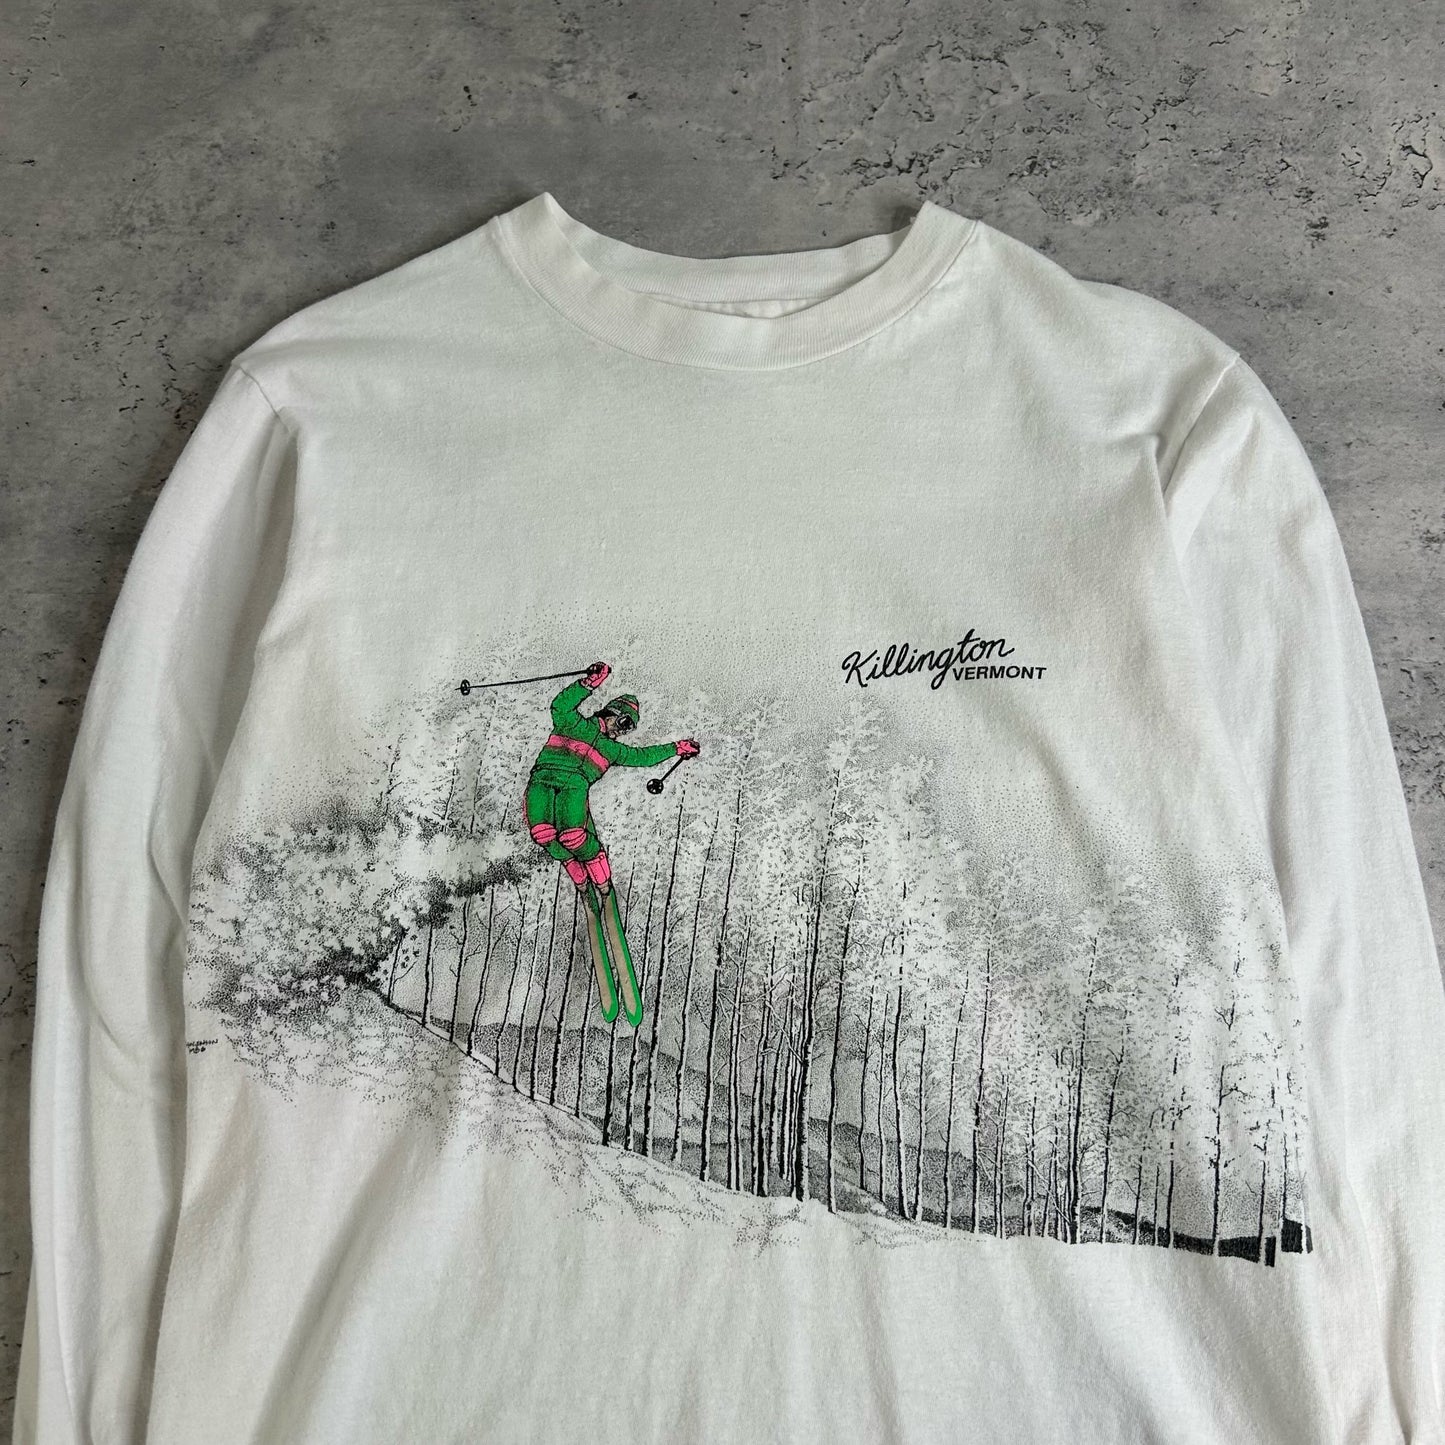 80's Killington Vermont Ski Long Sleeve Shirt size M